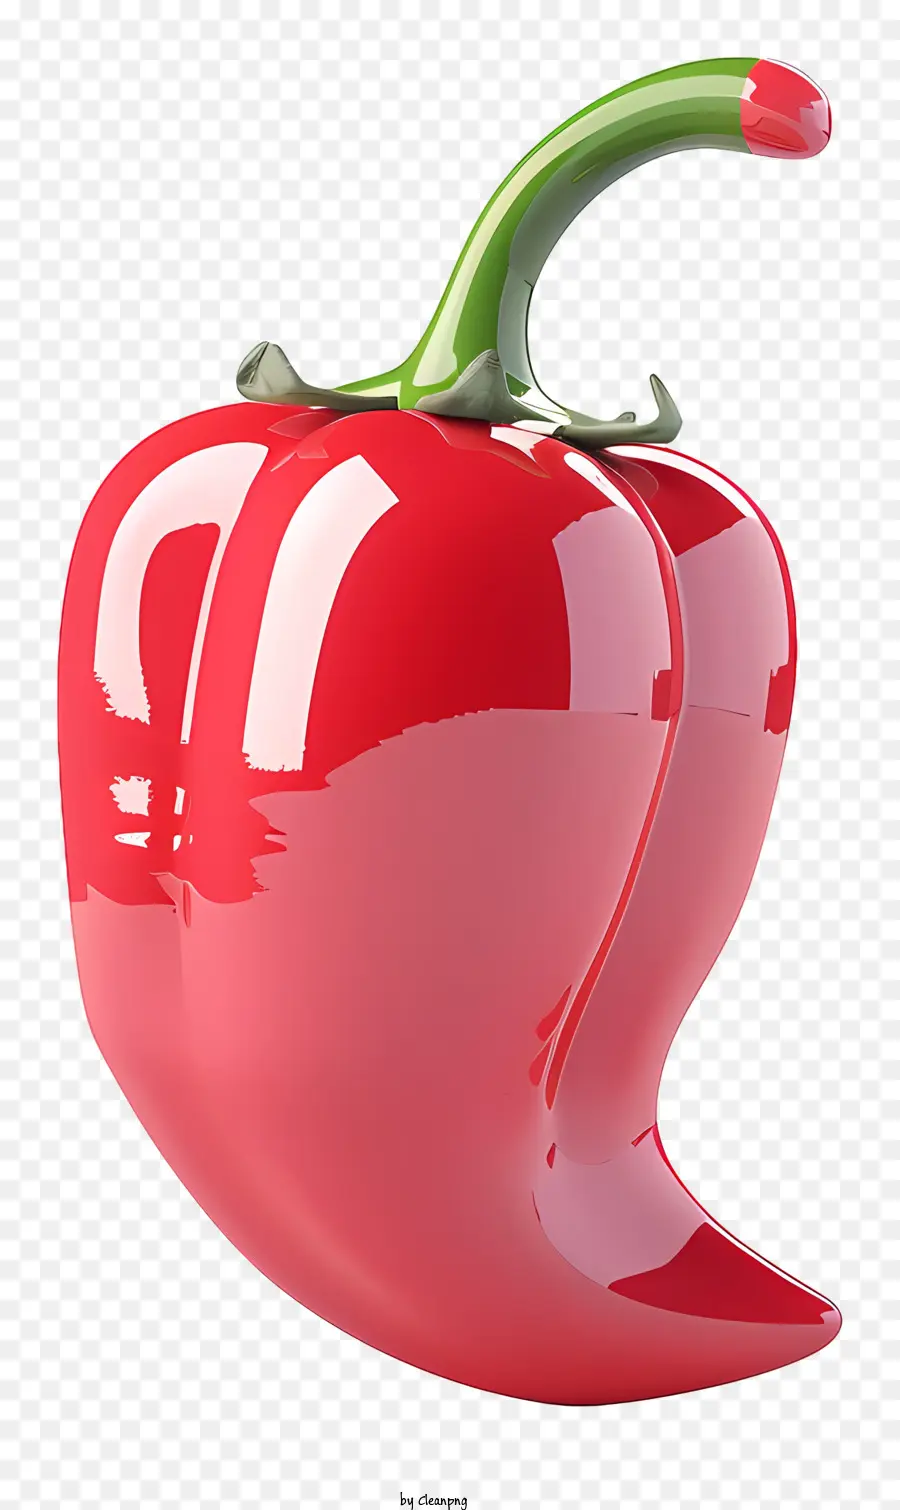 Pfeffer Rot Chili Pepper frischer Chilischpfeffer glänzender Chili -Pfeffer glänzender Chili -Pfeffer - Hochwertiges Bild von glänzendem rotem Chili -Pfeffer